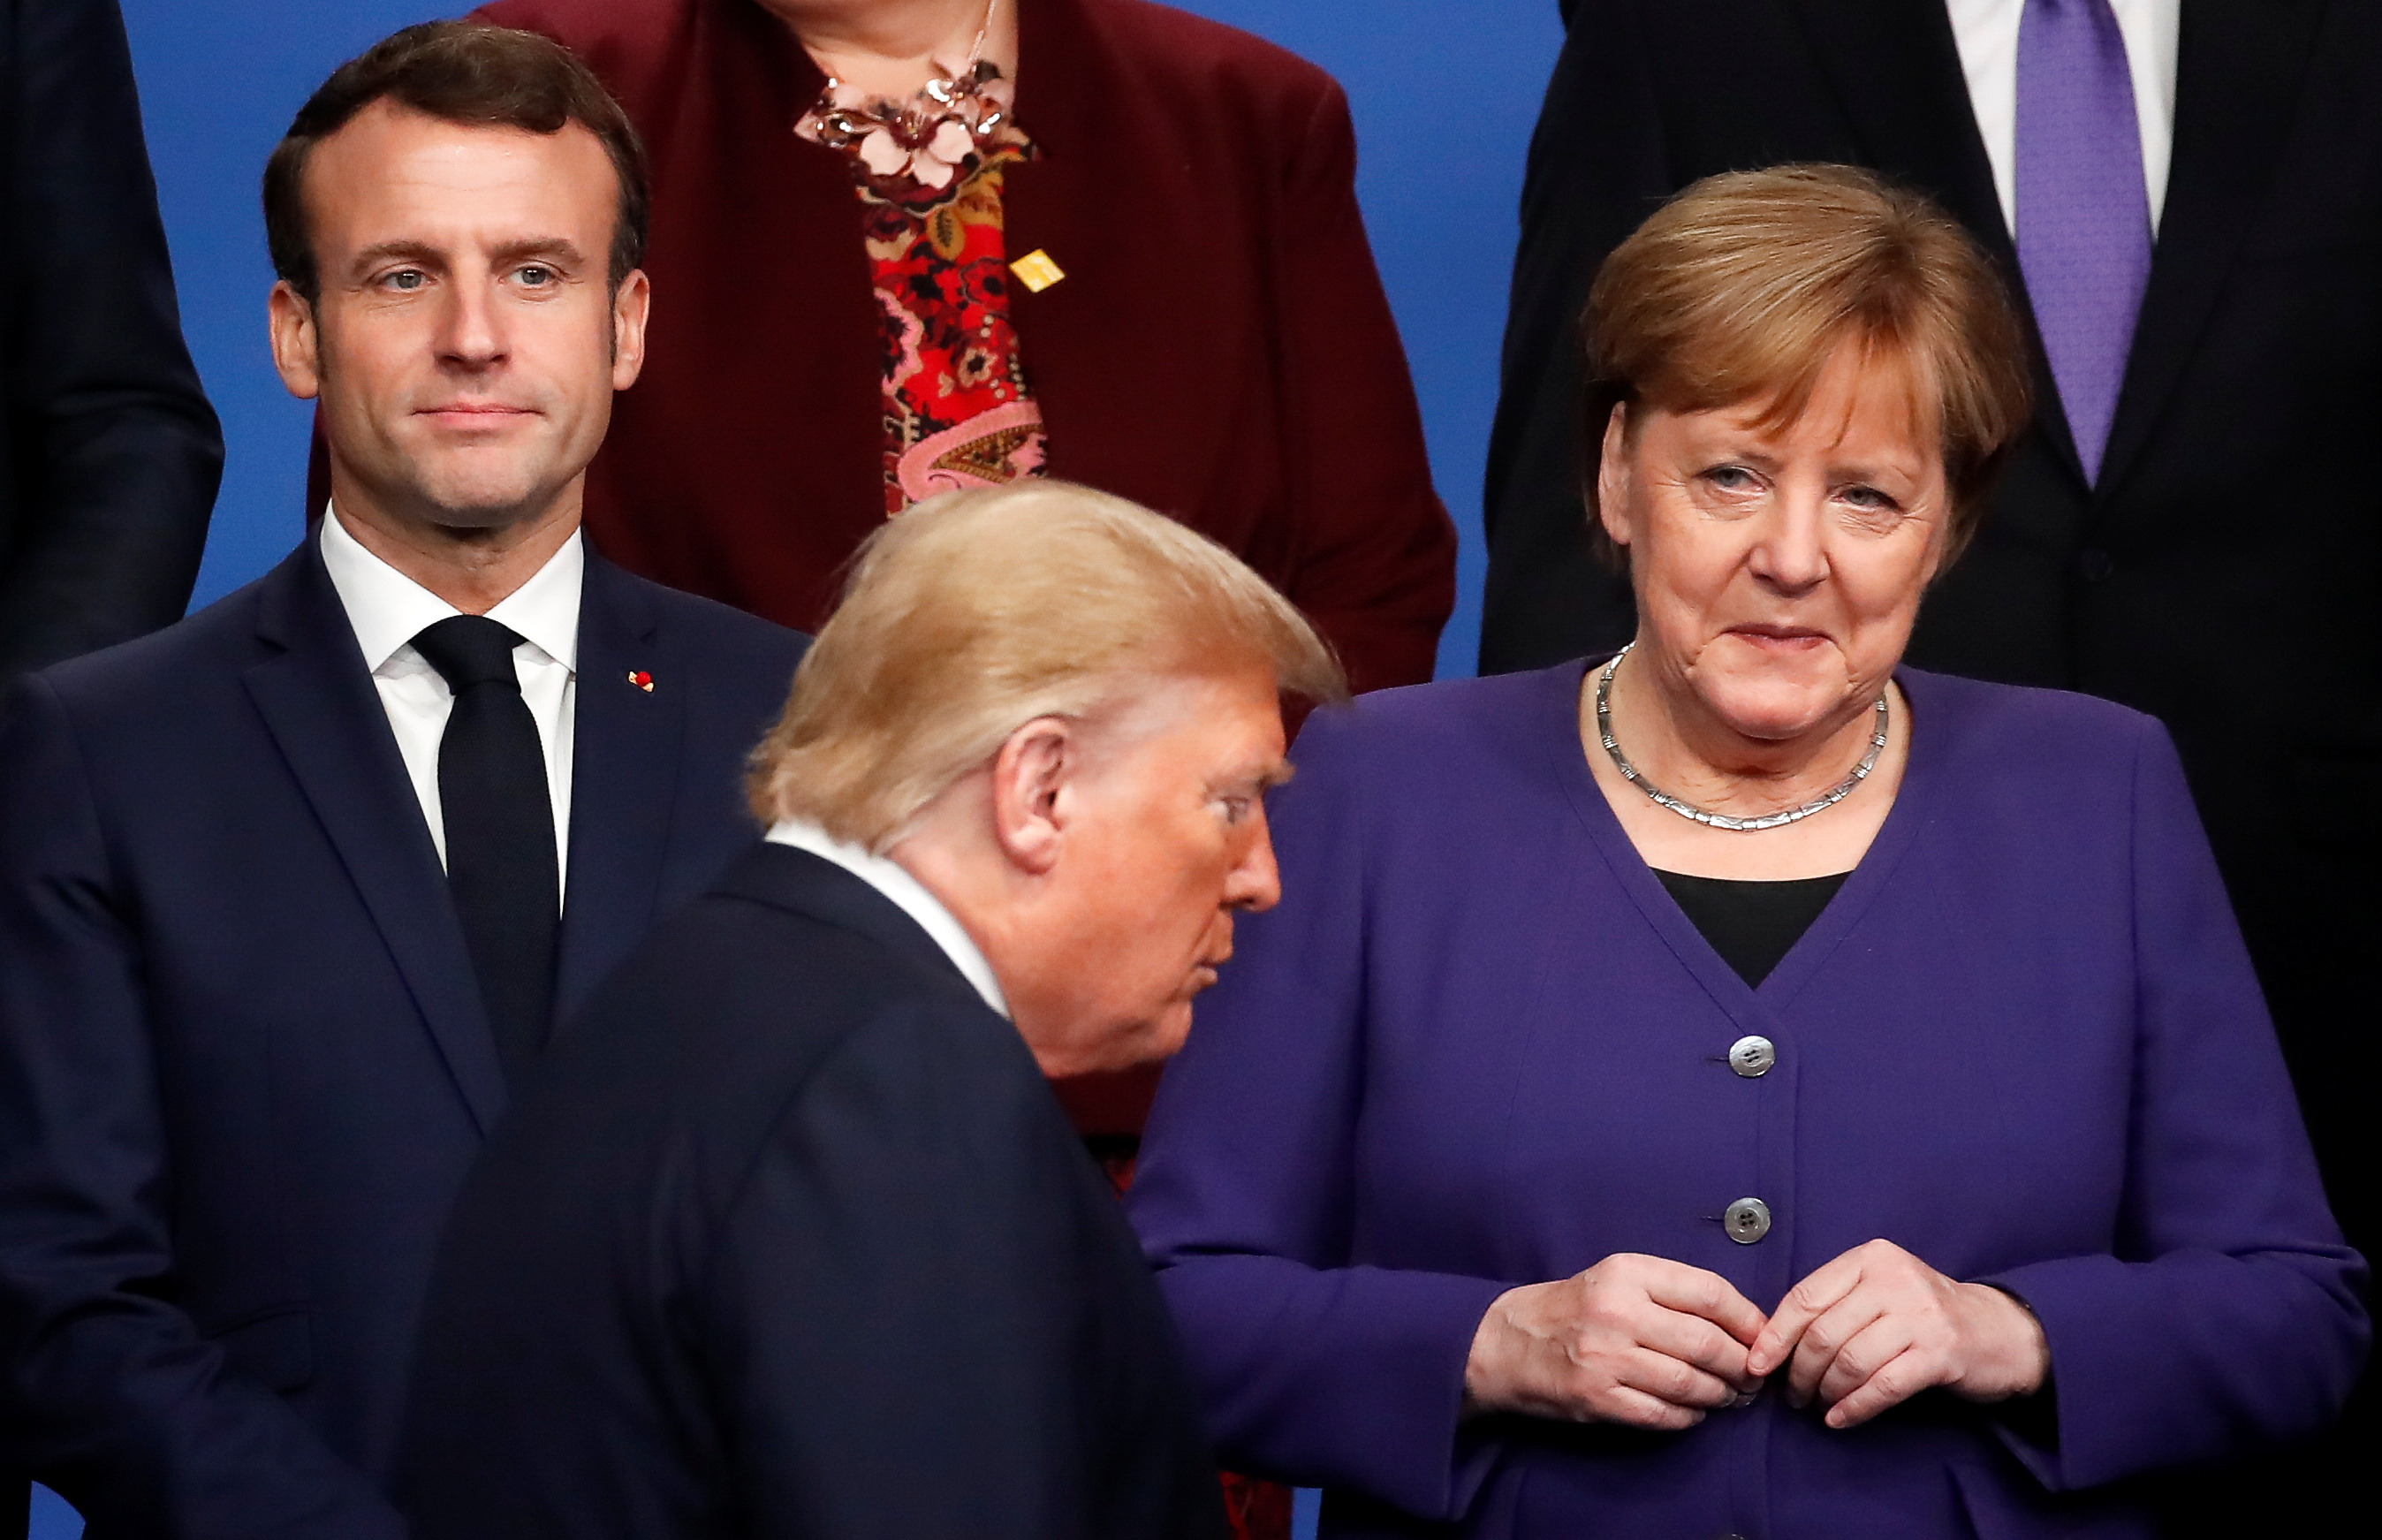 Donald Trump y dos líderes europeos con los que no tuvo buena relación: Emmanuel Macron y Angela Merkel (REUTERS/Christian Hartmann/Pool)